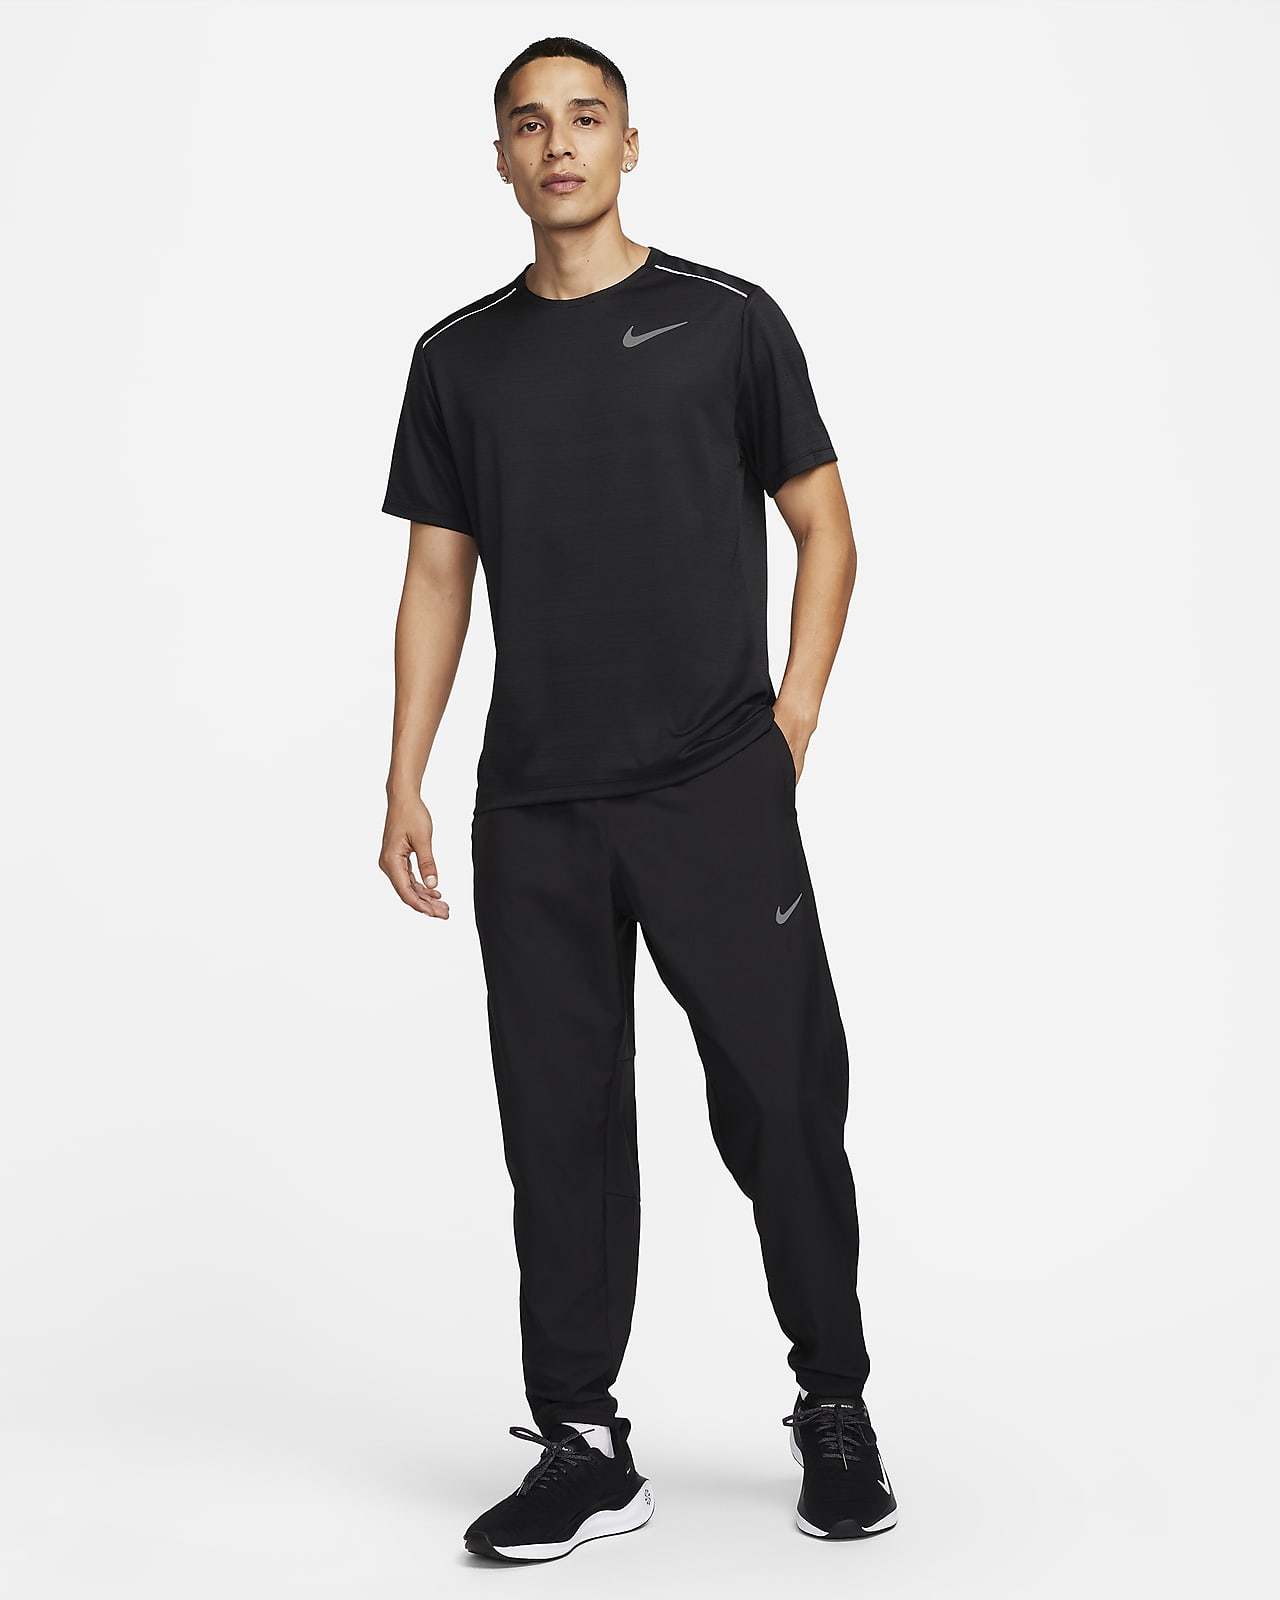 Nike Dri Fit Challenger Knit Pants Grey